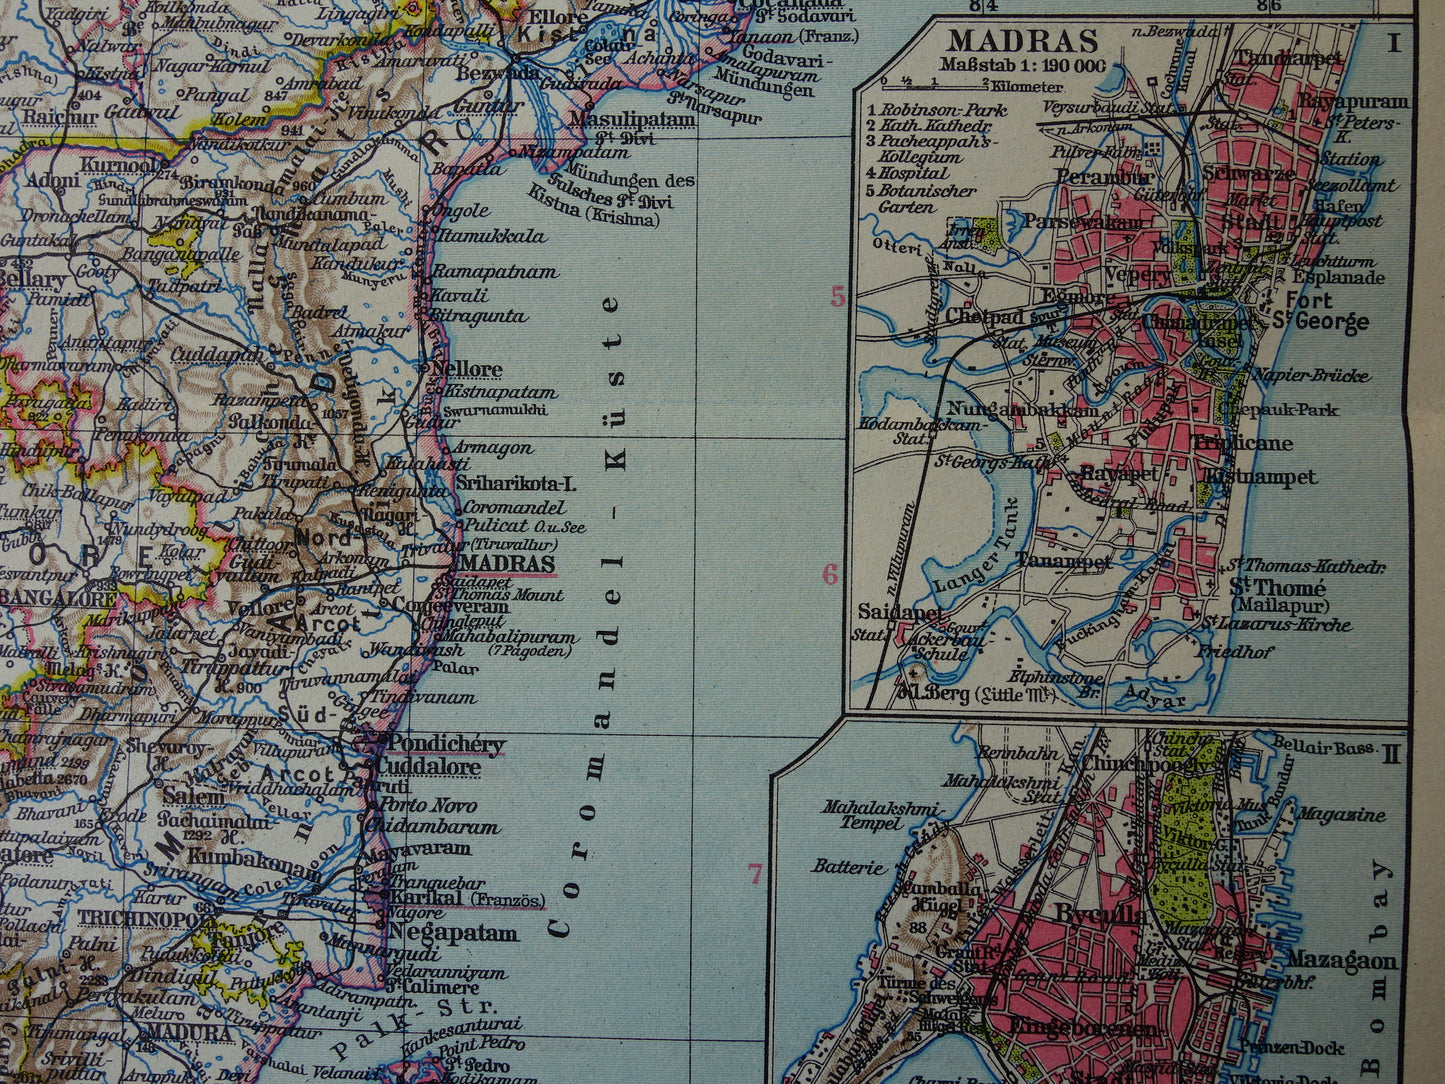 Oude landkaart van India in 1928 originele historische kaart van India met plattegrond Madras Bombay Mumbai